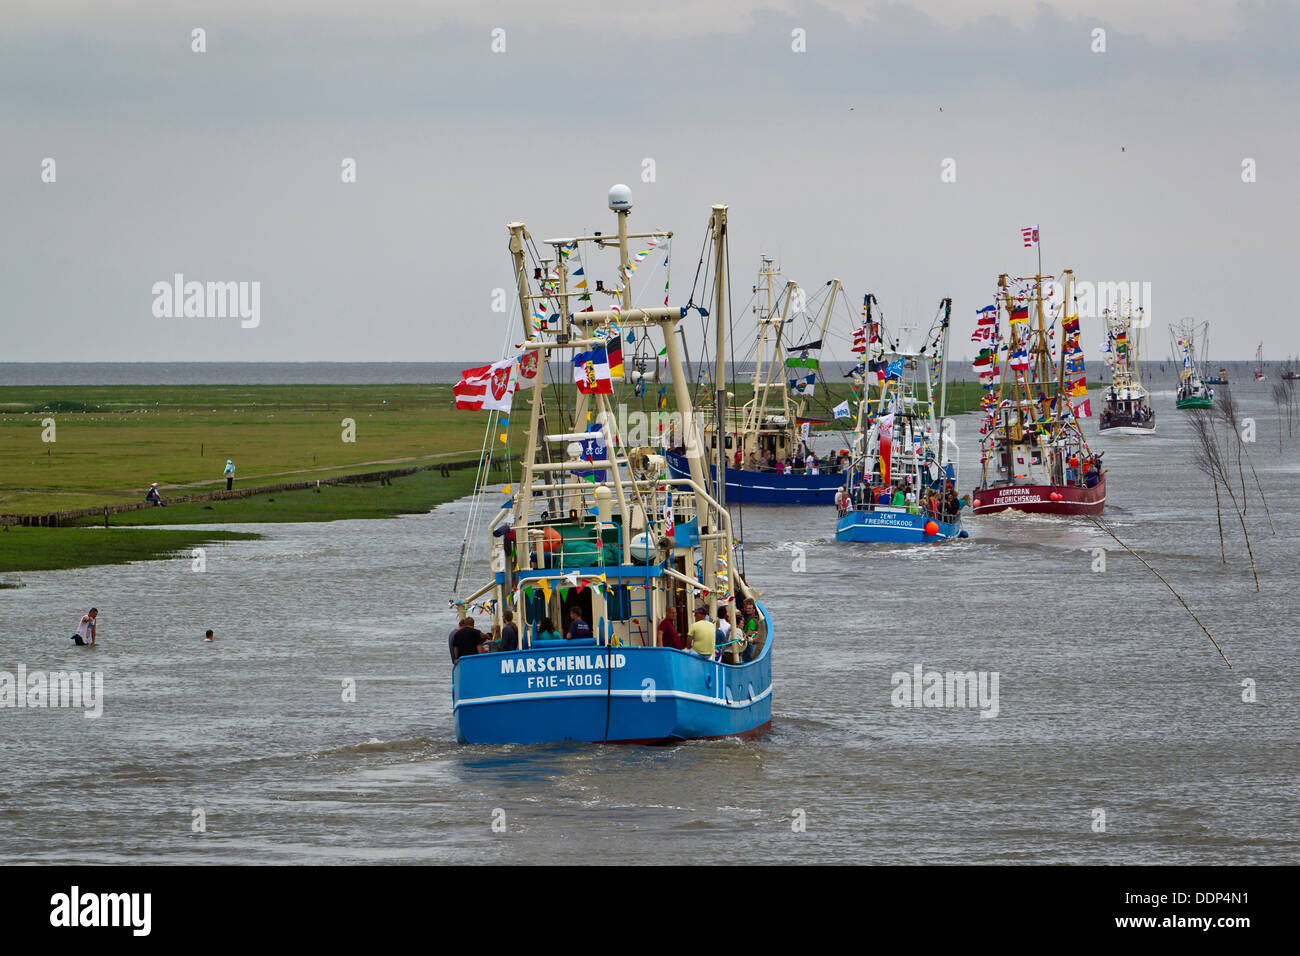 Régate de bateaux de pêche, Friedrichskoog, Schleswig-Holstein, Allemagne, Europe Banque D'Images